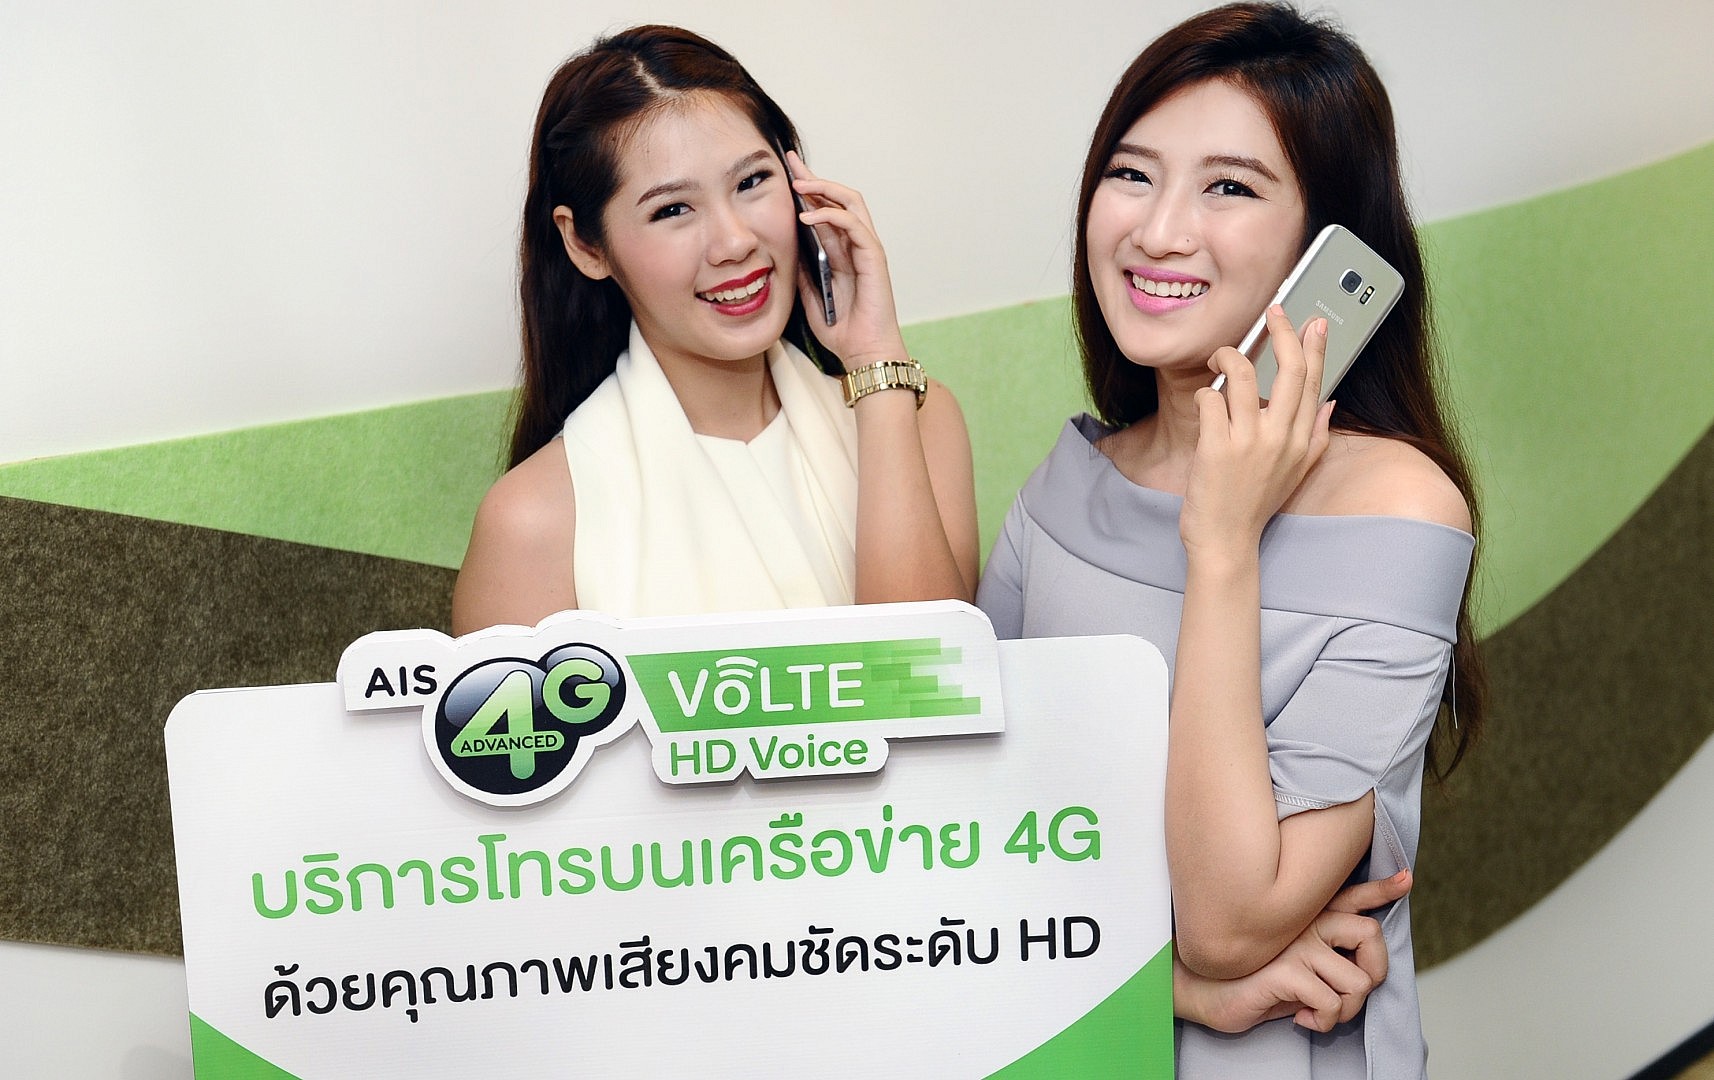 “AIS 4G VoLTE” โทรคมชัดระดับ HD ใช้ได้แล้ววันนี้!